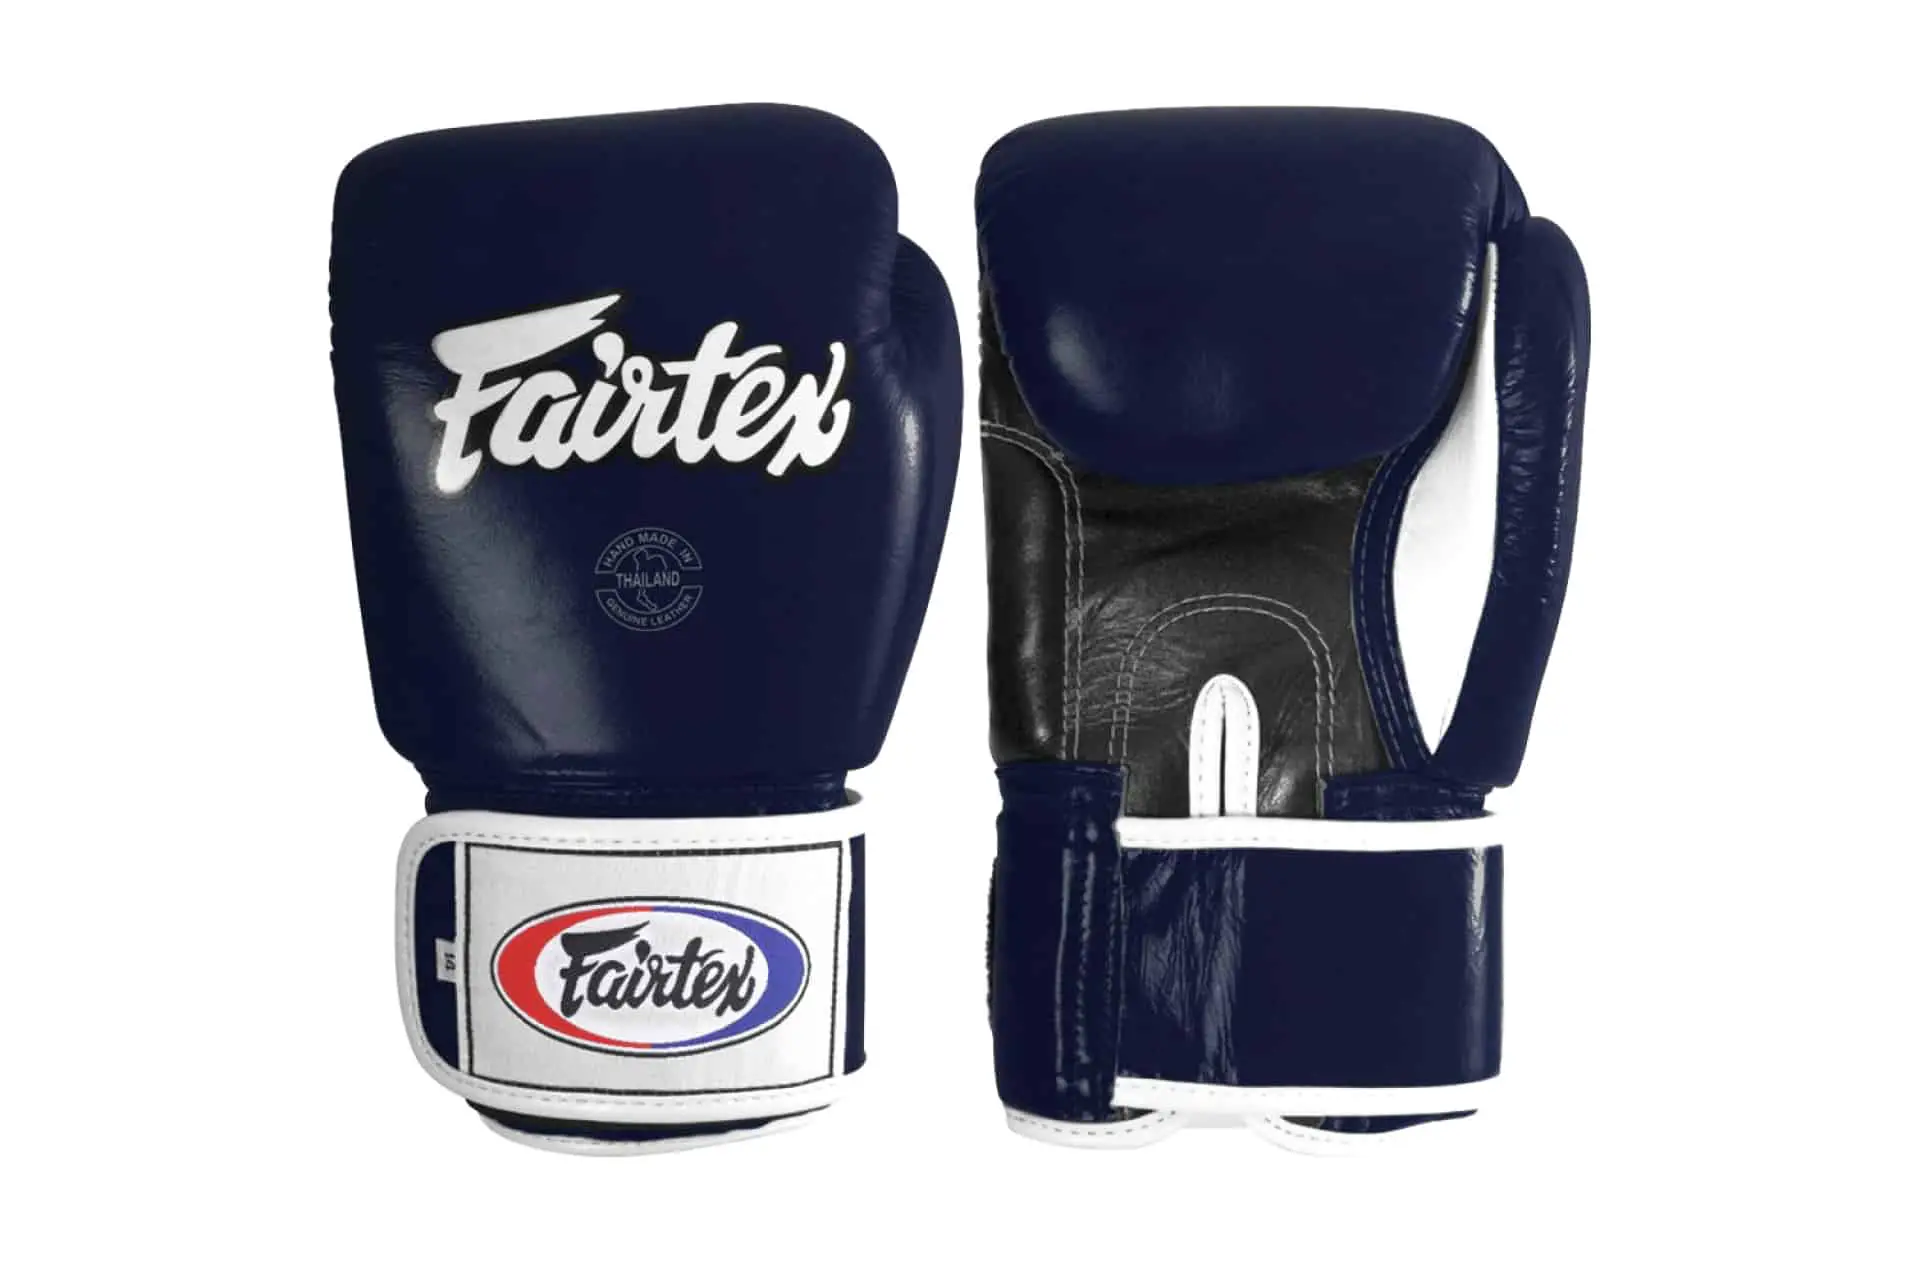 Fairtex Muay Thai Training Gloves Featured